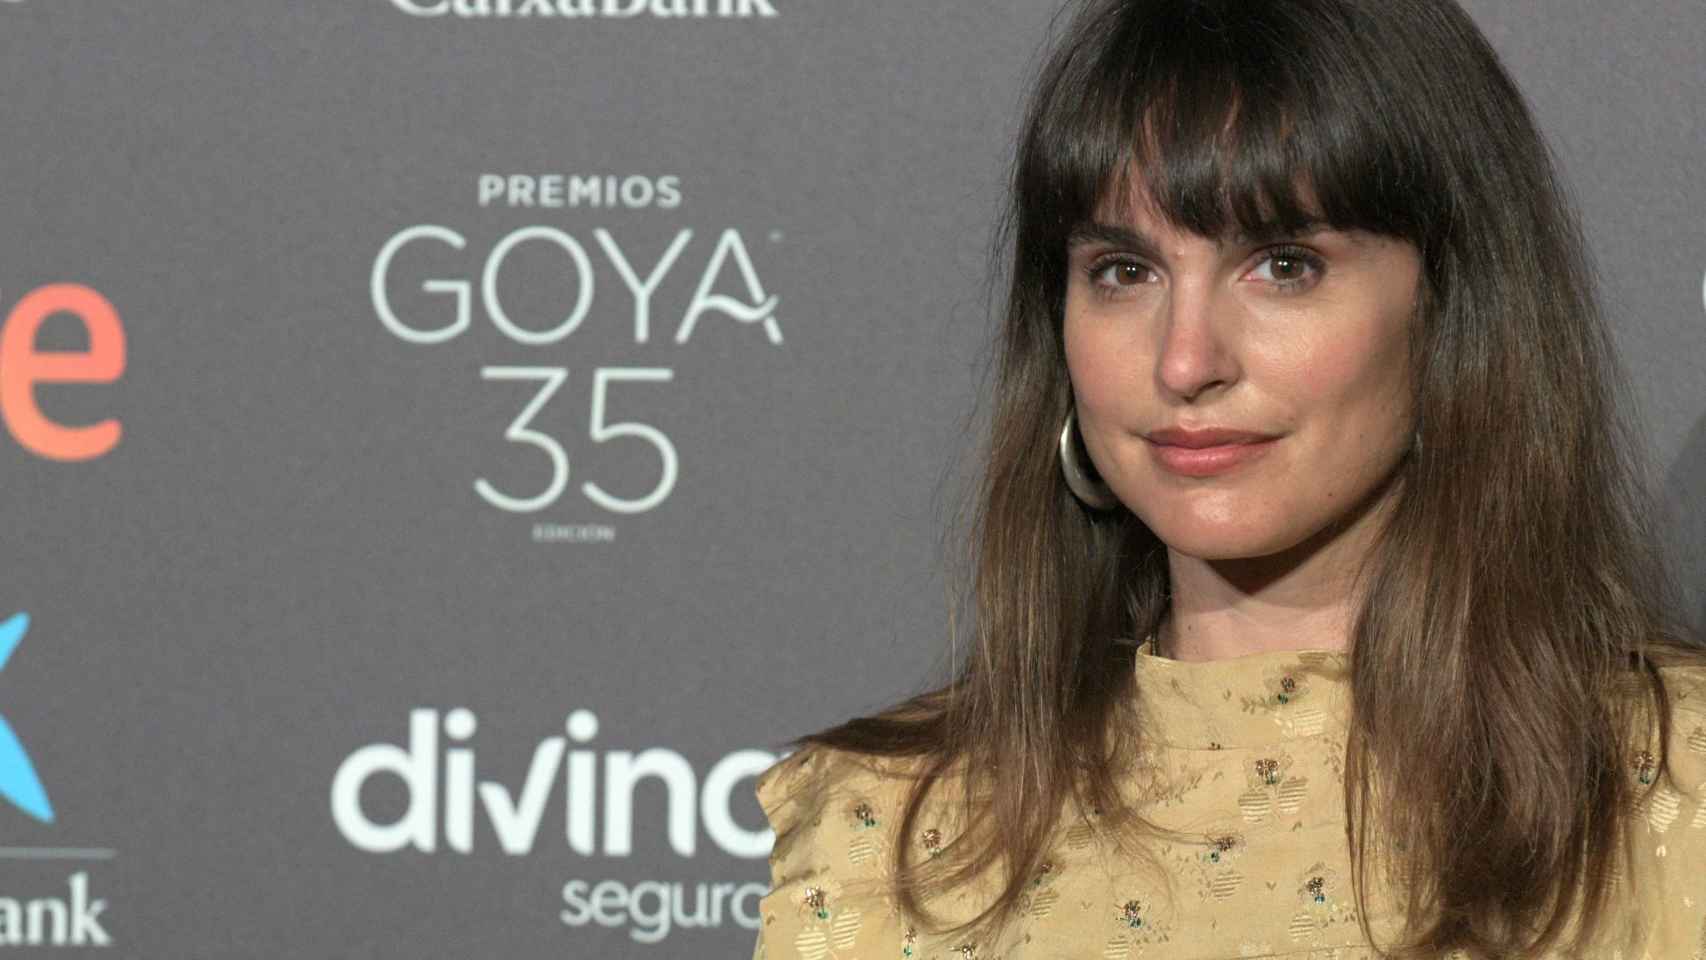 La actriz Veronica Echegui, en los premios Goya 2021 en Madrid. JOS OLIVA (EP)